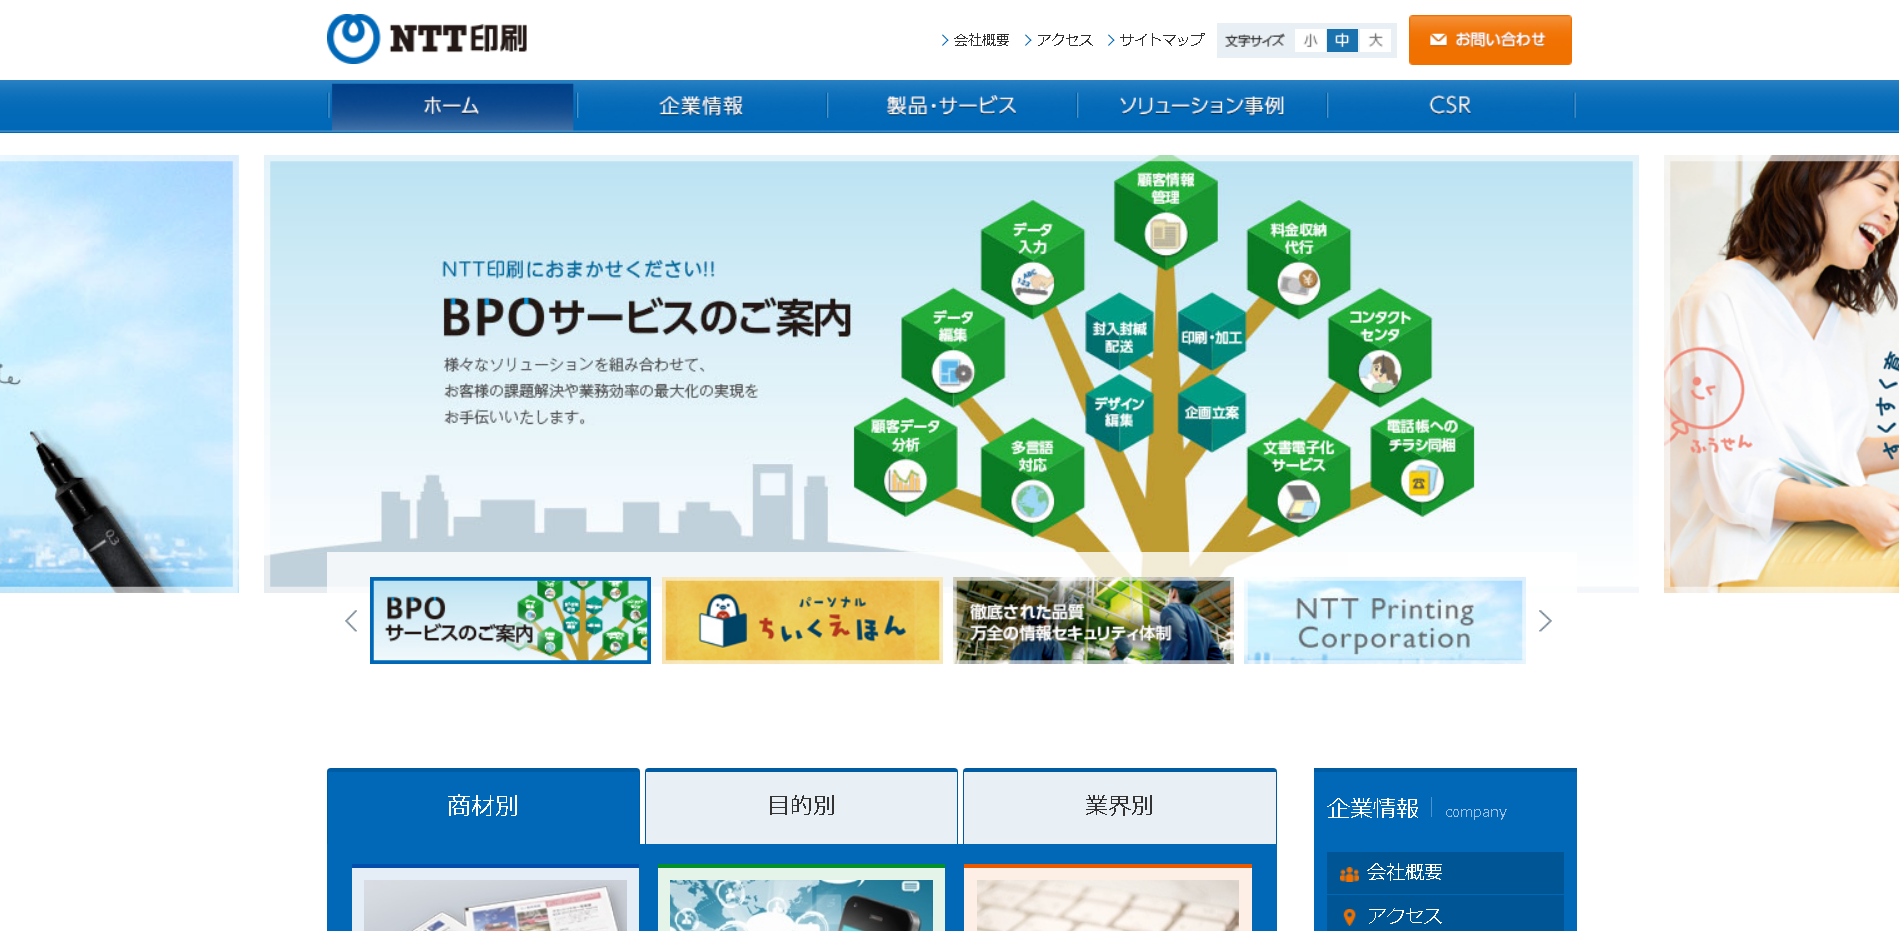 NTT印刷株式会社のNTT印刷サービス